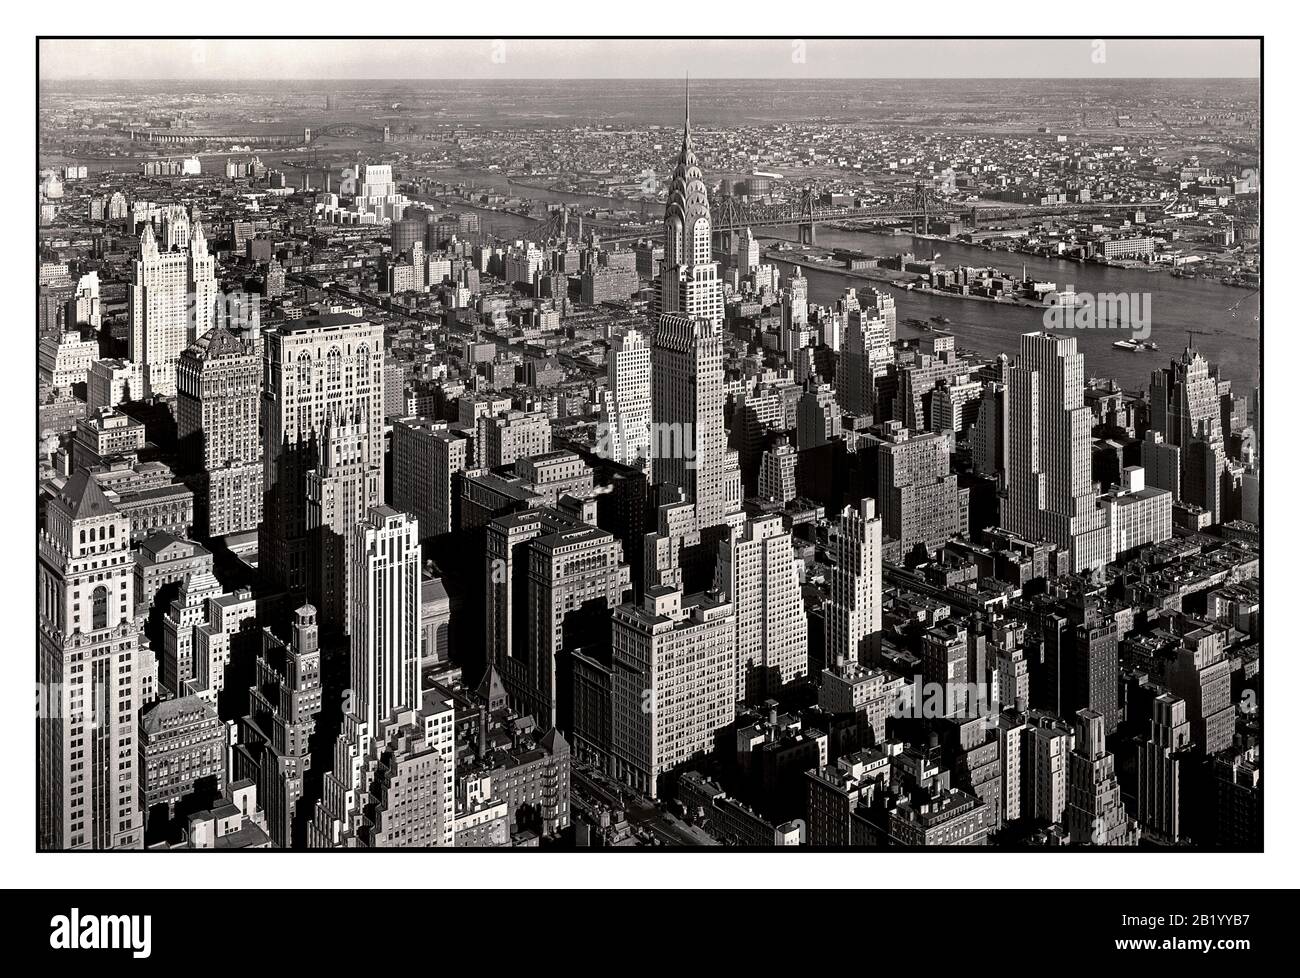 GRATTE-CIELS DE MANHATTAN image de vue aérienne de la Chrysler en 1932 Bâtiment dominant Midtown Manhattan gratte-ciel bâtiments New York City NY ÉTATS-UNIS Banque D'Images